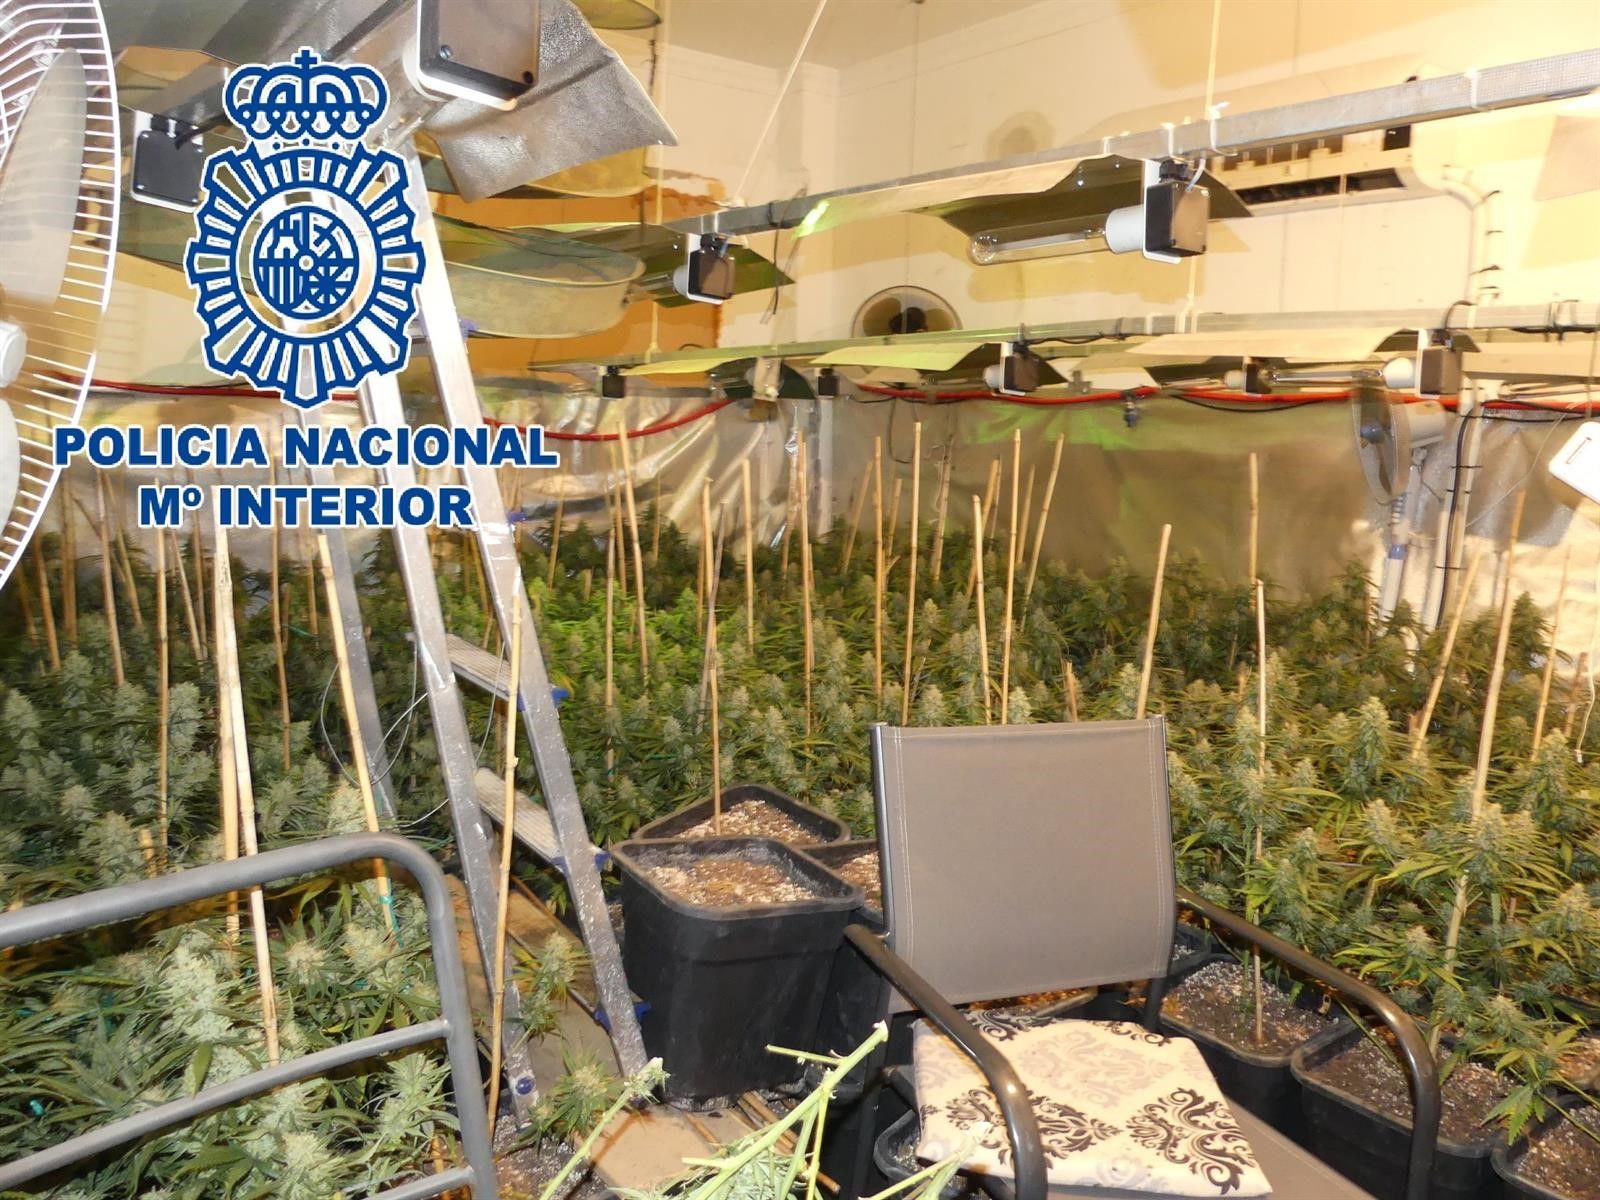 Plantación de cannabis descubierta en el interior de una vivienda en Sanlúcar. FOTO: POLICÍA NACIONAL